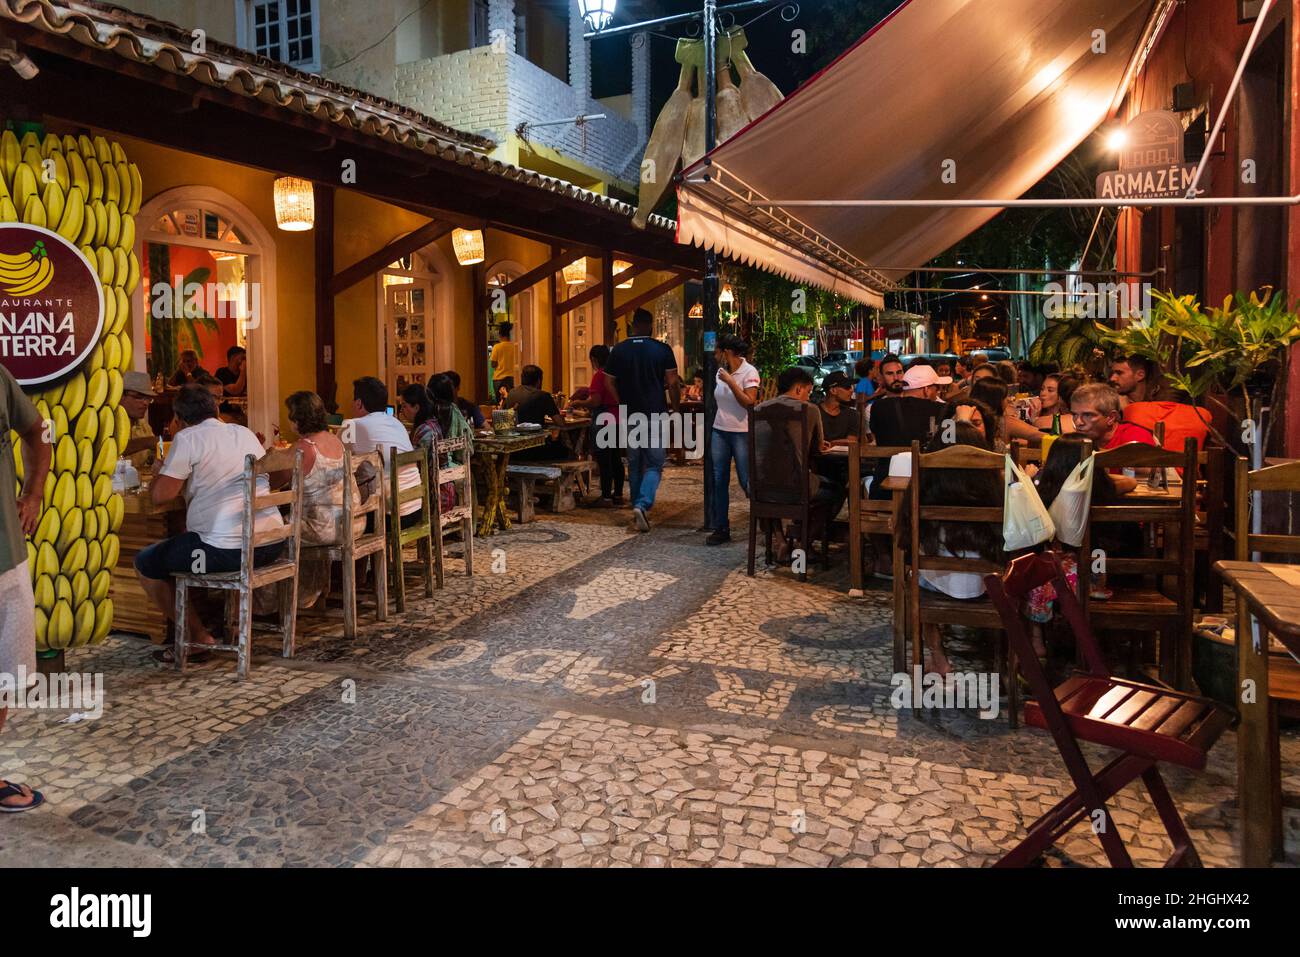 Cena al aire libre con gente comiendo, bebiendo, y caminando en Beco das Garrafas en Prado, Bahia, Brasil. Foto de stock